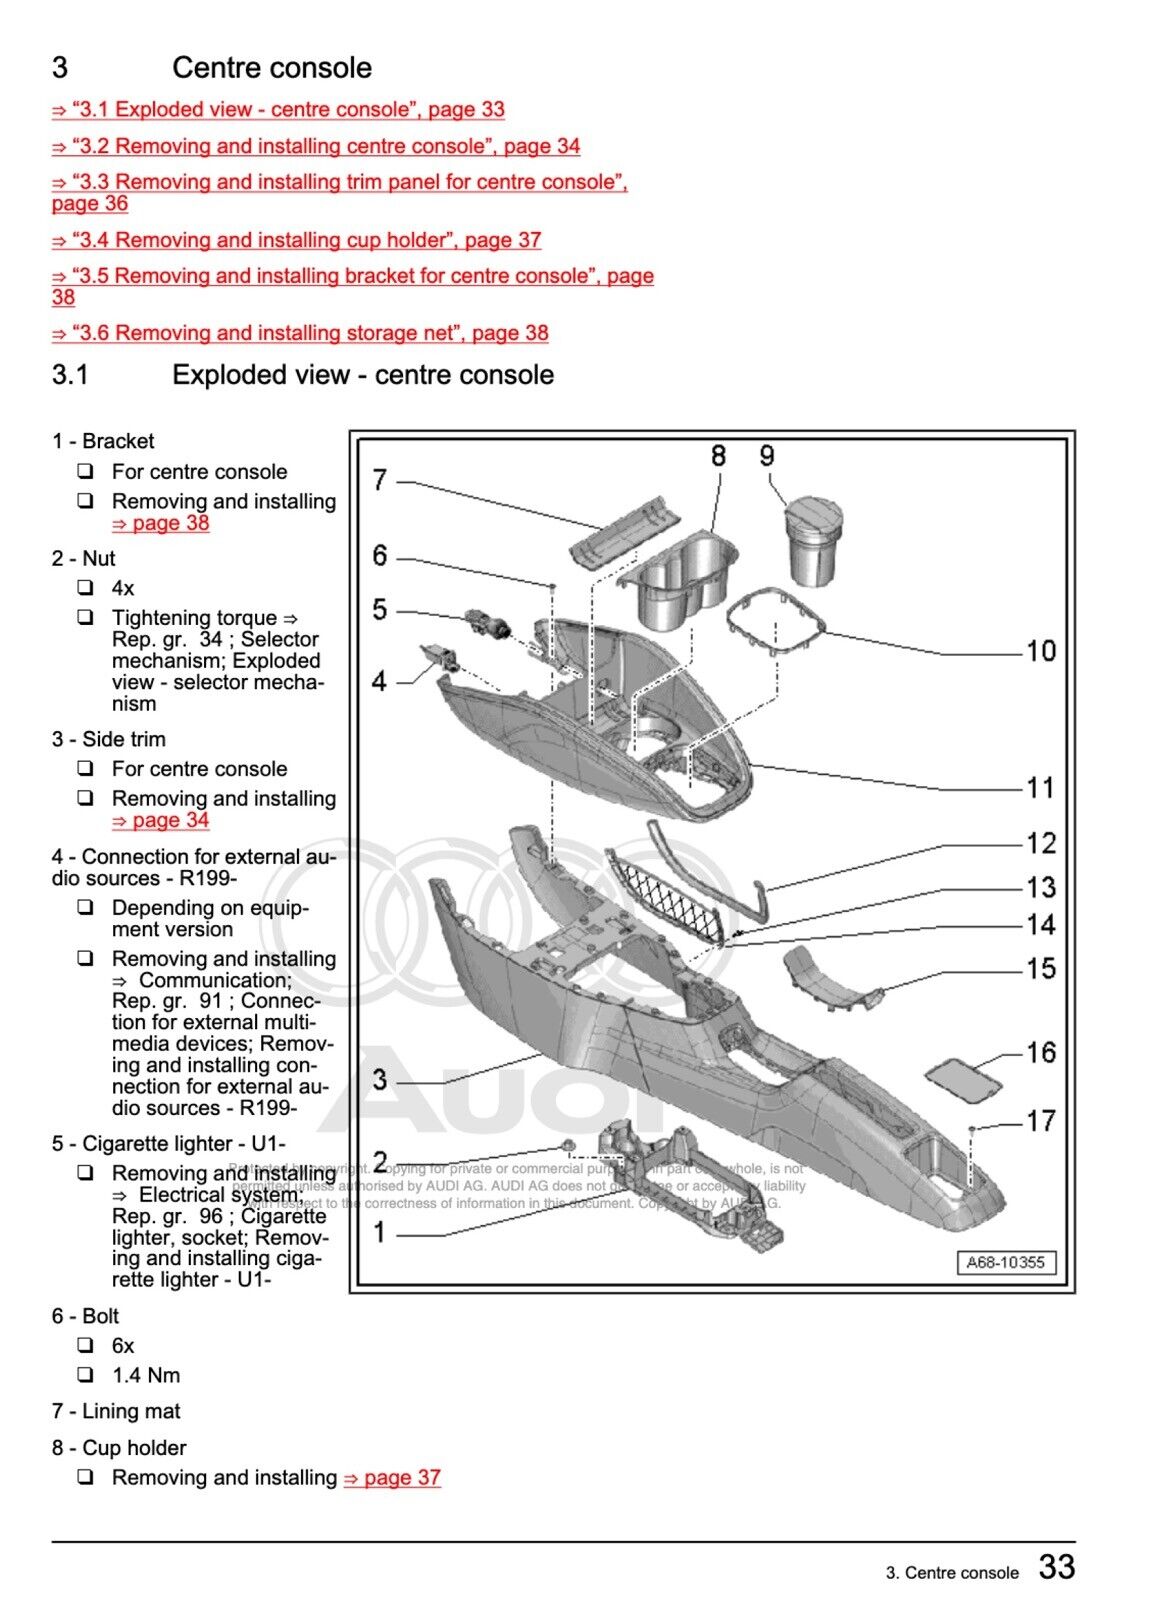 Audi A1 (8X) 2010-2018 workshop manual repair manual